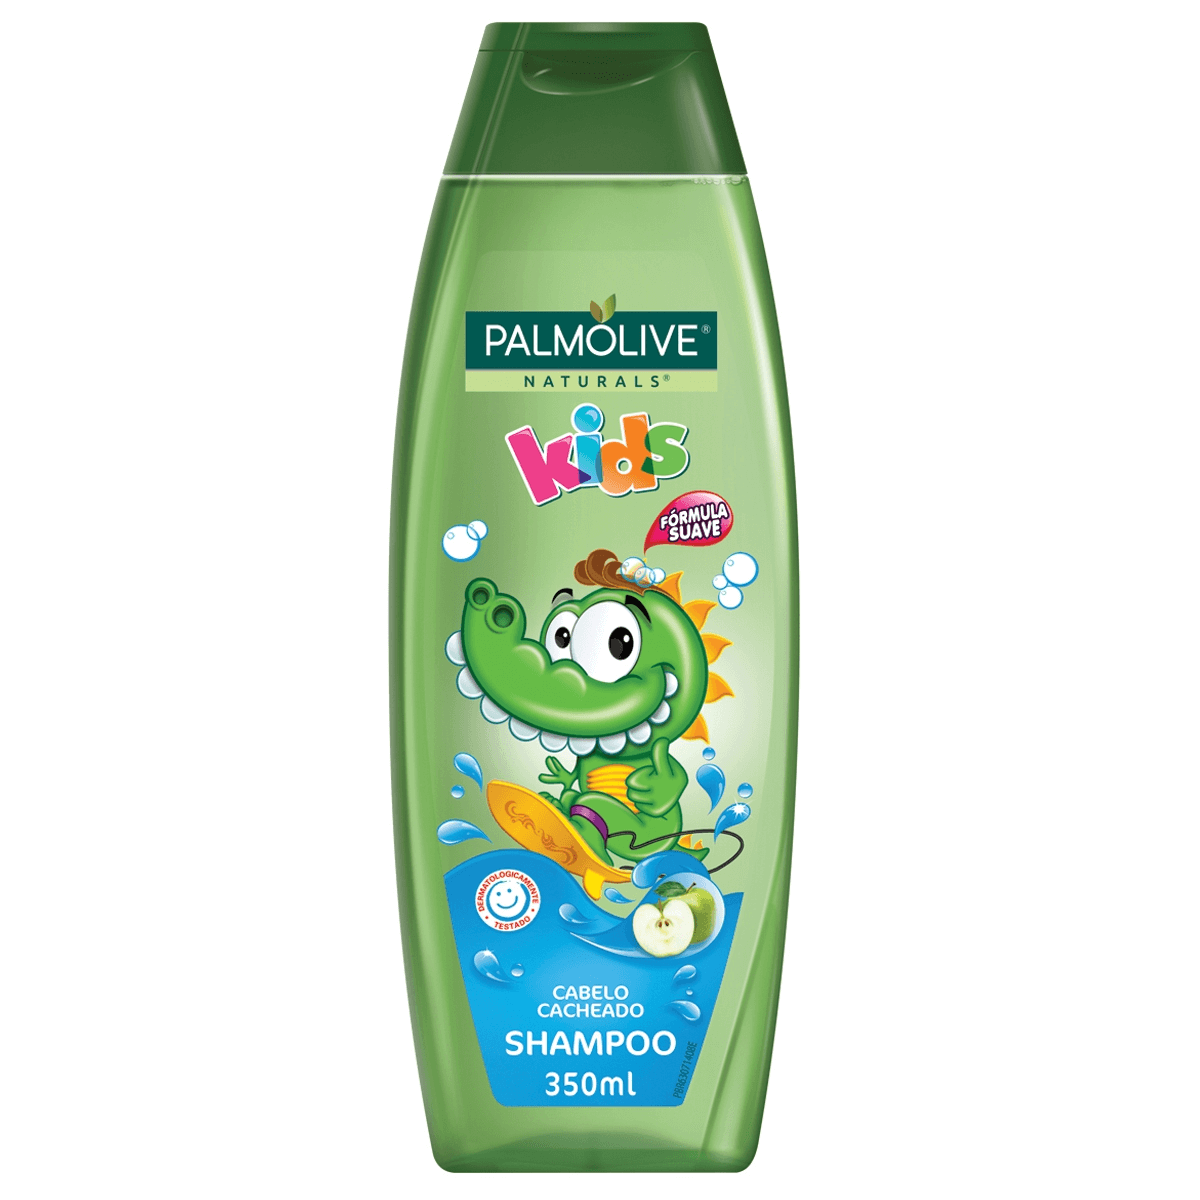 Shampoo Infantil Palmolive Naturals Kids Cabelo Cacheado com 350ml 350ml